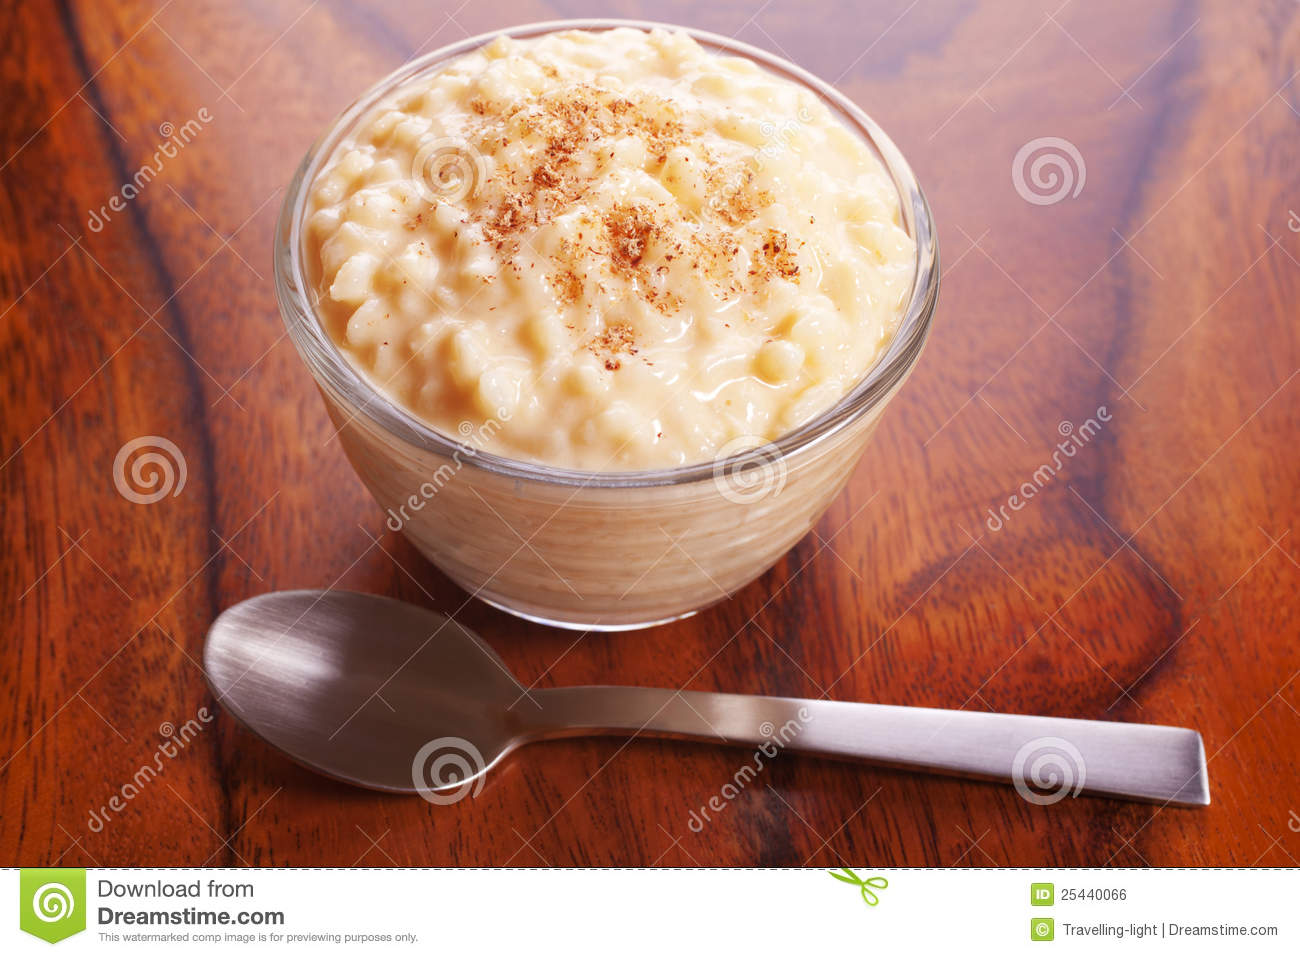 Rice Pudding With Nutmeg Royalty Free Stock Image   Image  25440066